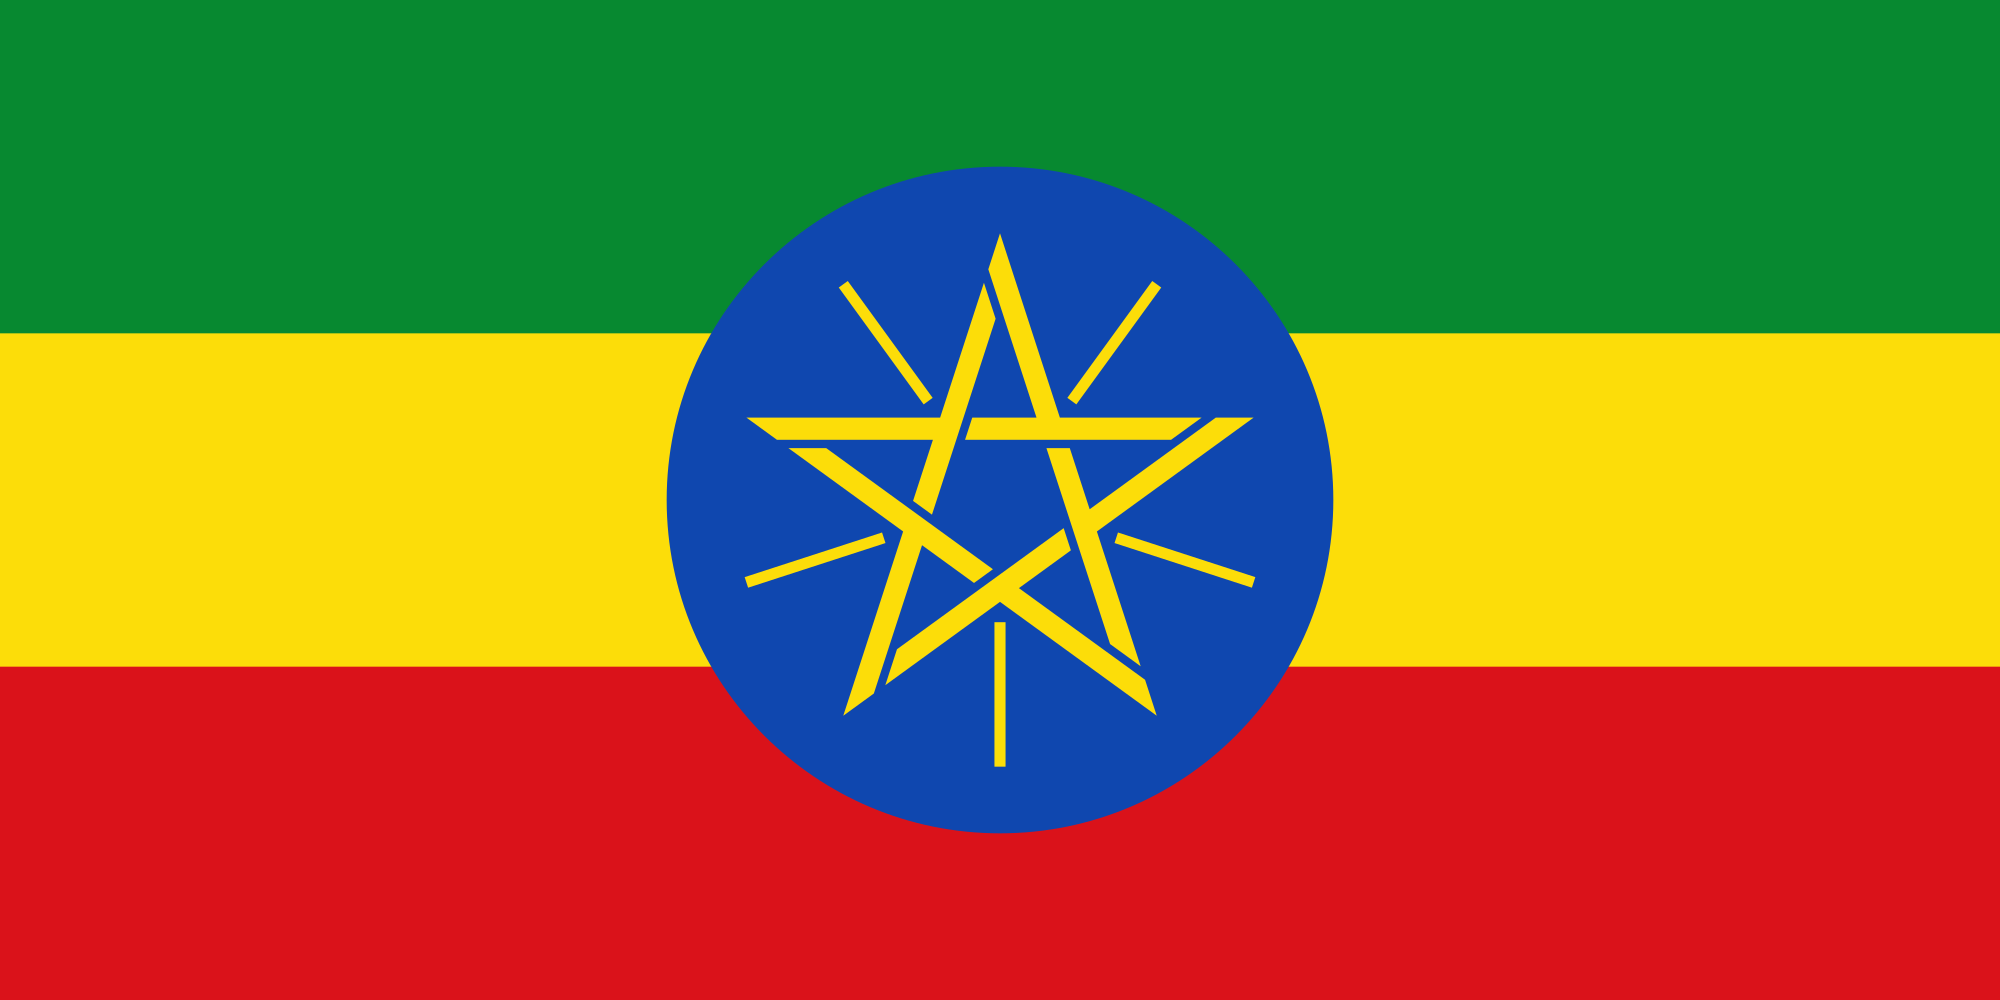 Ethiopia , Vietnam Confirm Interest in Strengthening Relationship